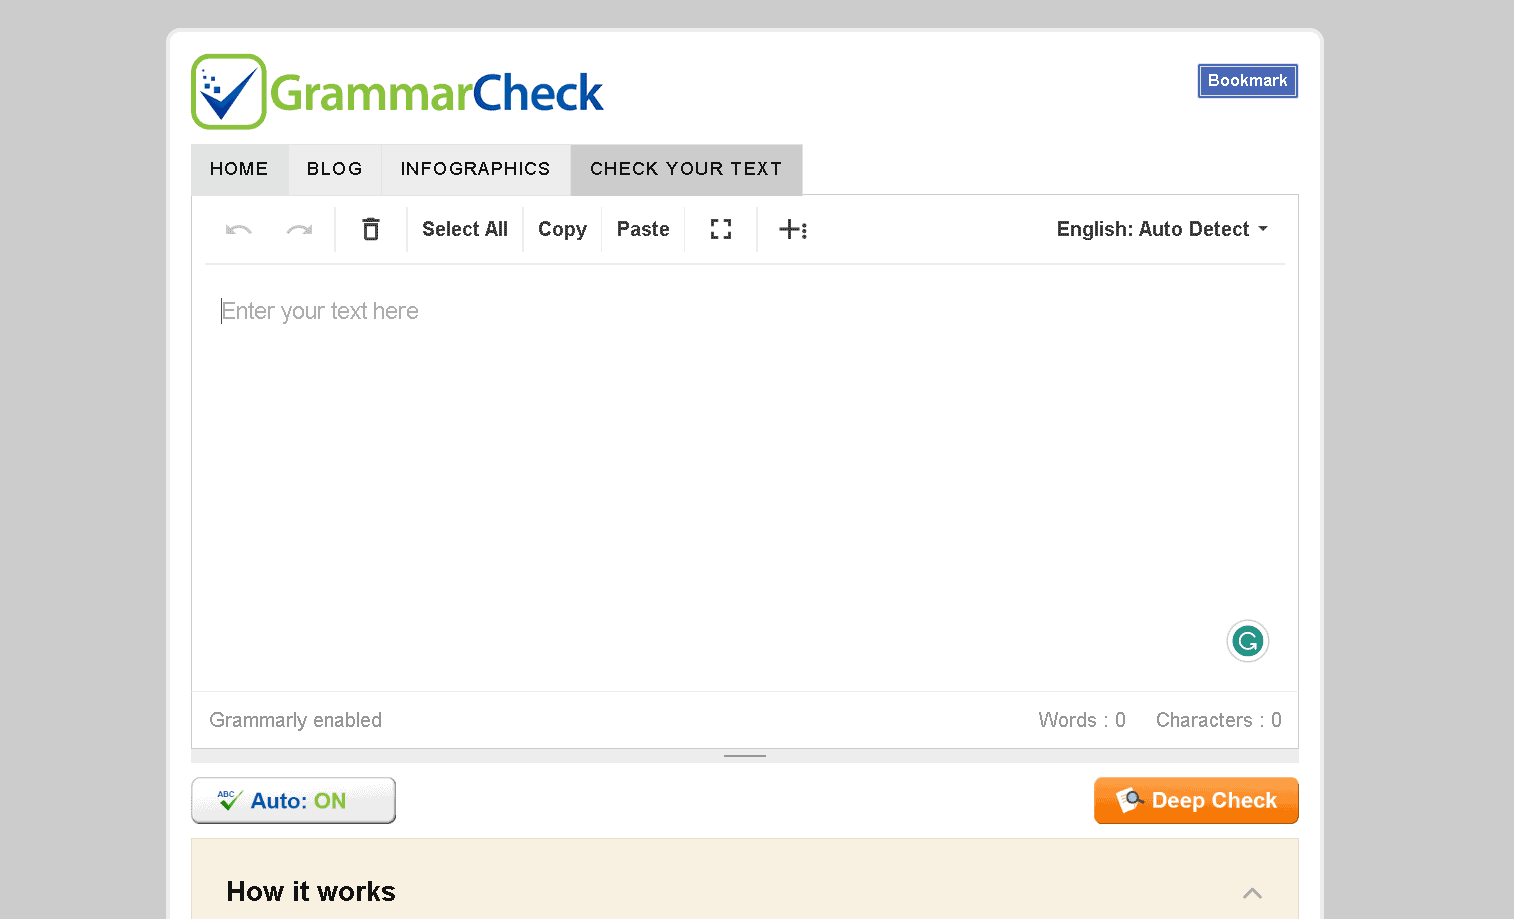 GrammarCheck is a free online grammar checker